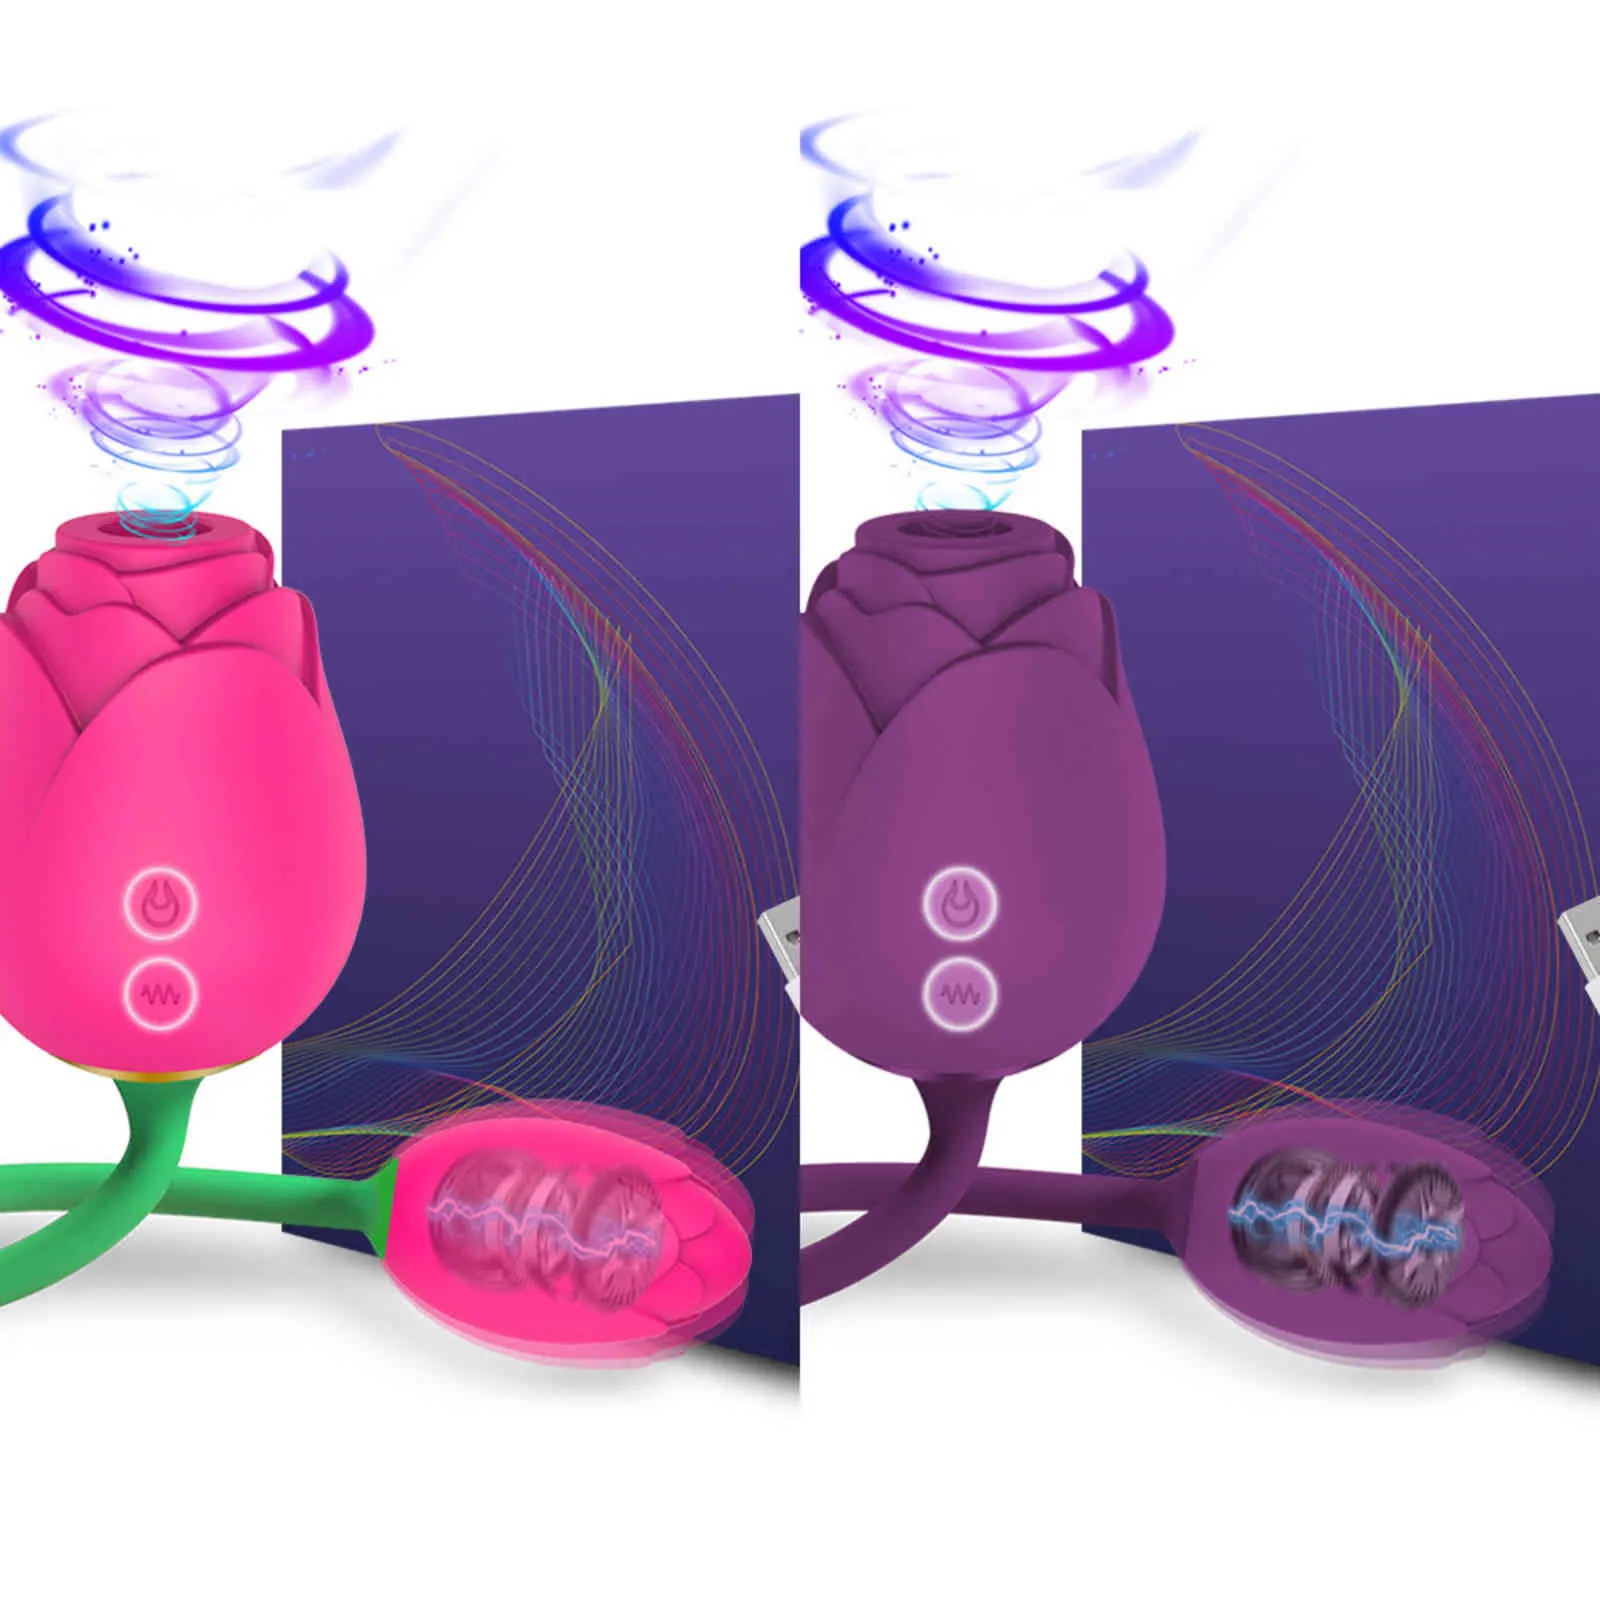 NXY Eggs Rose Toys for Women Clitoride Stimulator Vibrating Love Egg Potente capezzolo Vacuum Sucker Vibratore Articoli femminili Adulti 18 1124